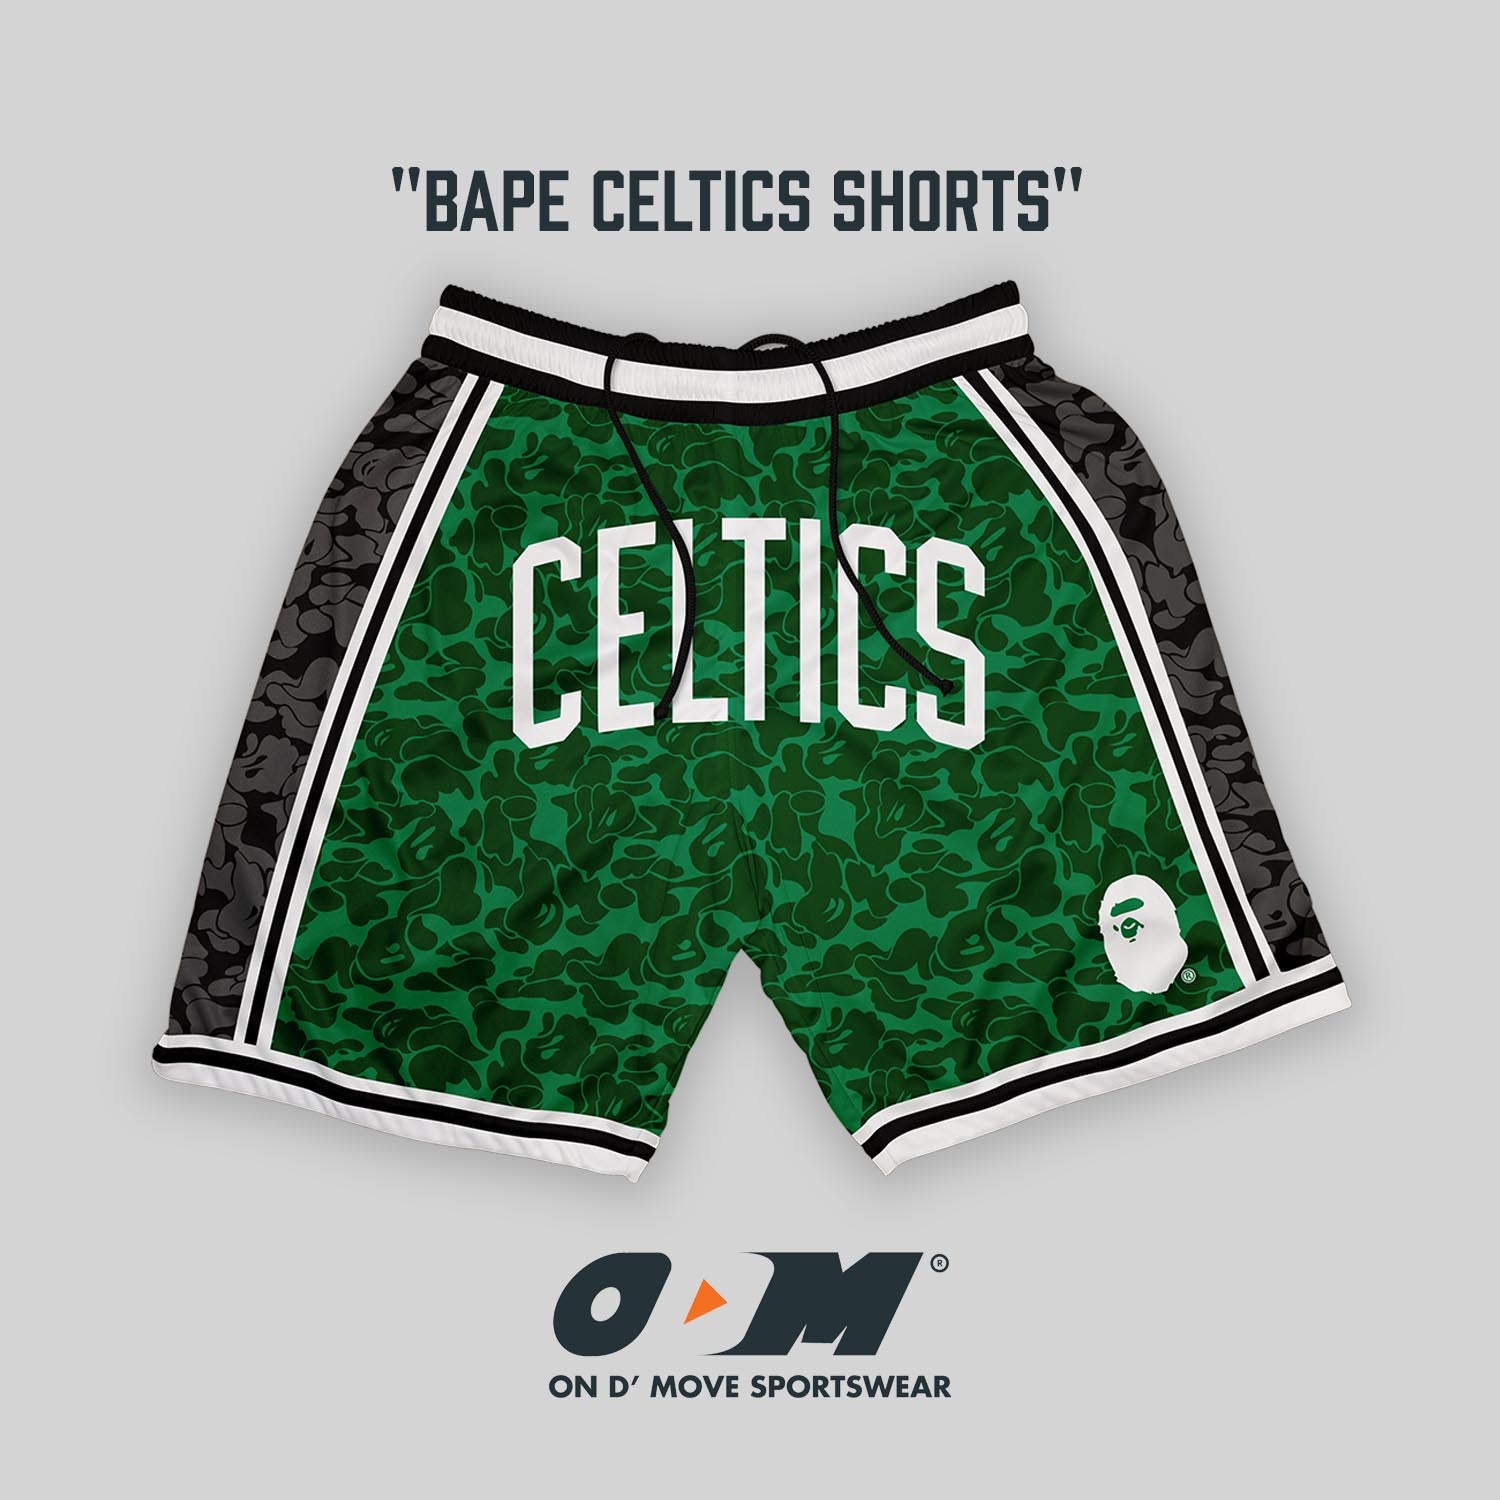 BAPE Celtics Shorts